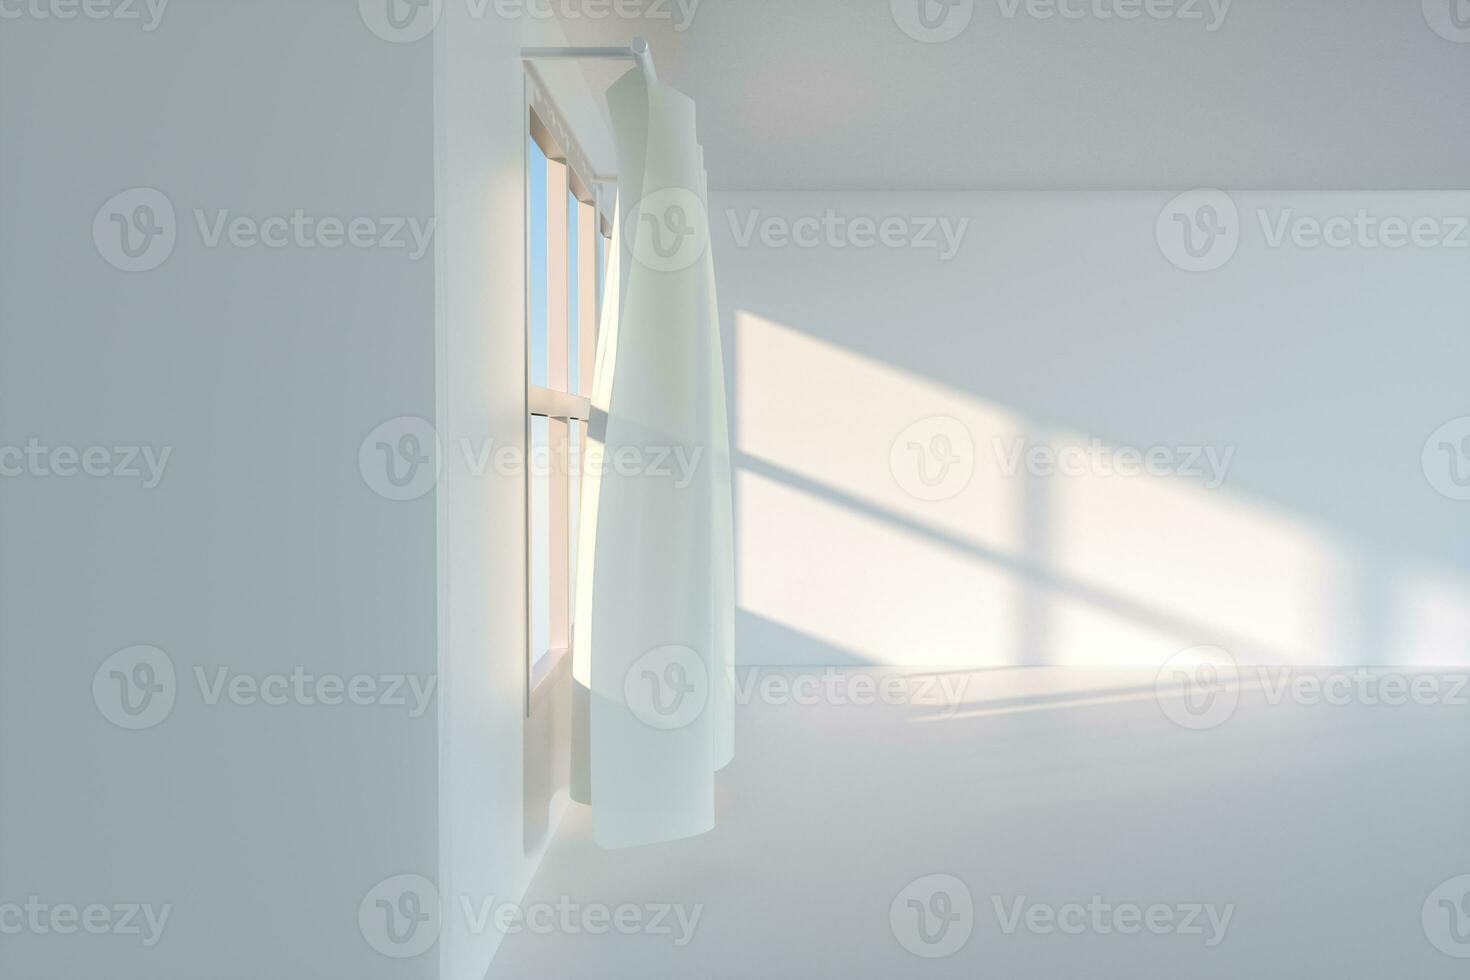 ett tömma rum med solsken komma genom de ridå, 3d tolkning. foto